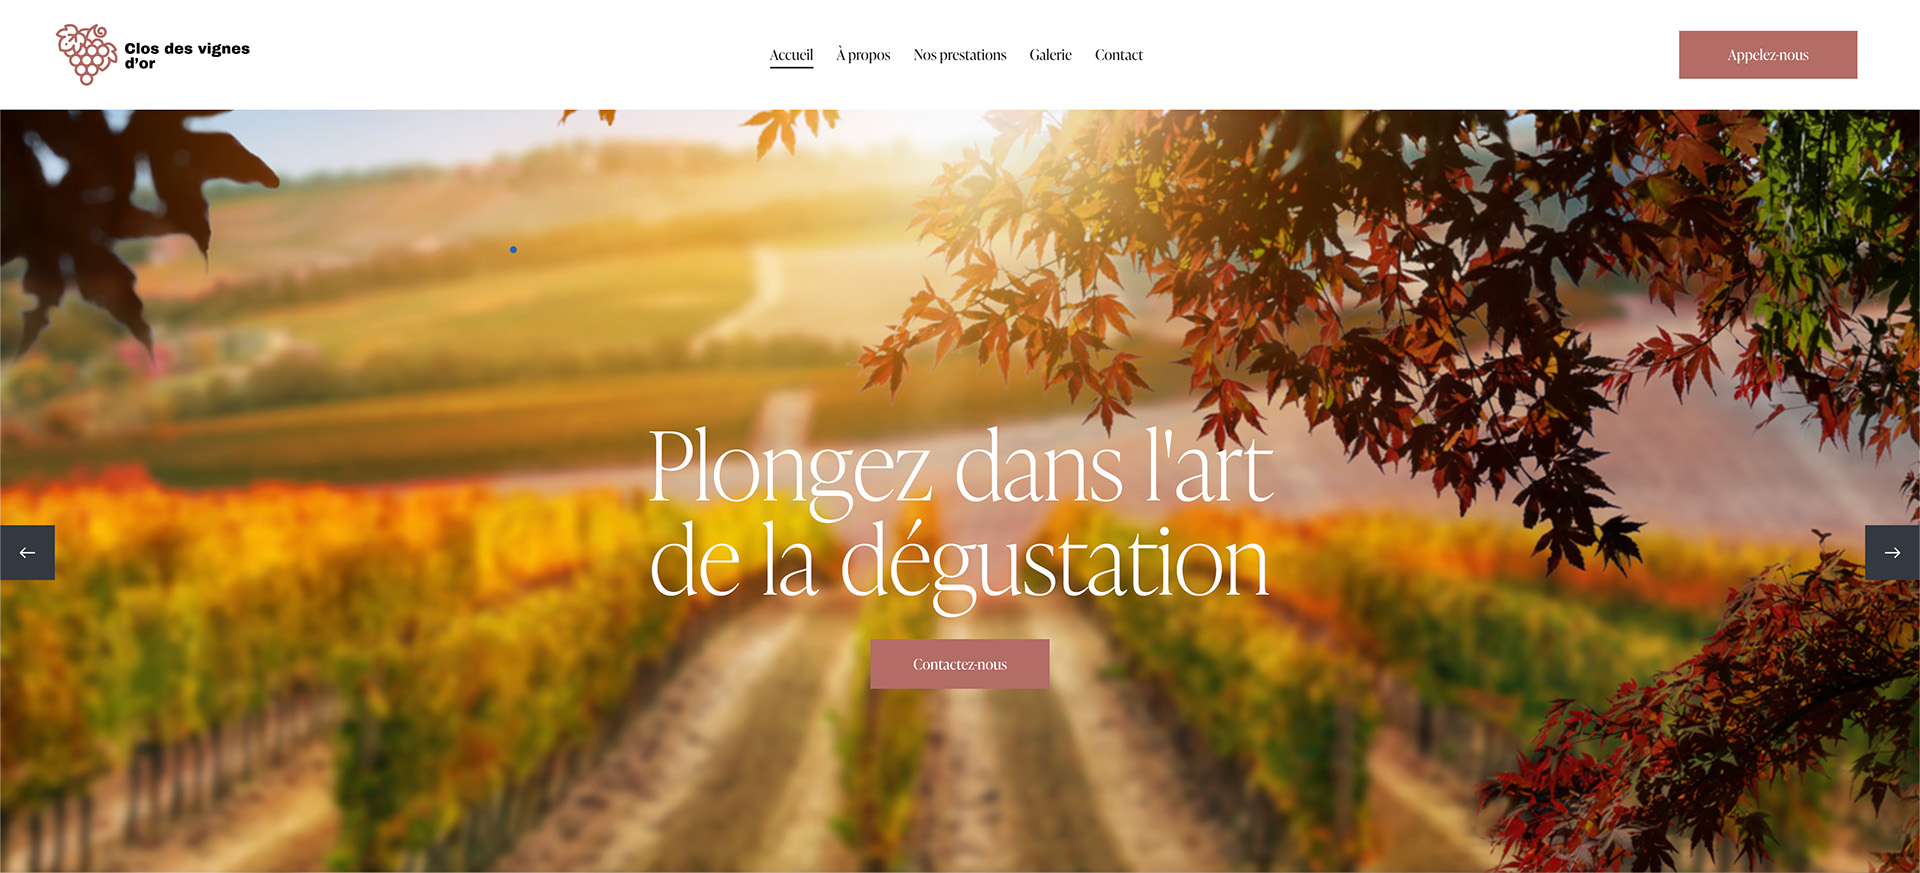 Présentation du thème 'Vignoble', conçu spécialement pour les sites web de domaines viticoles et vignobles. - Tours